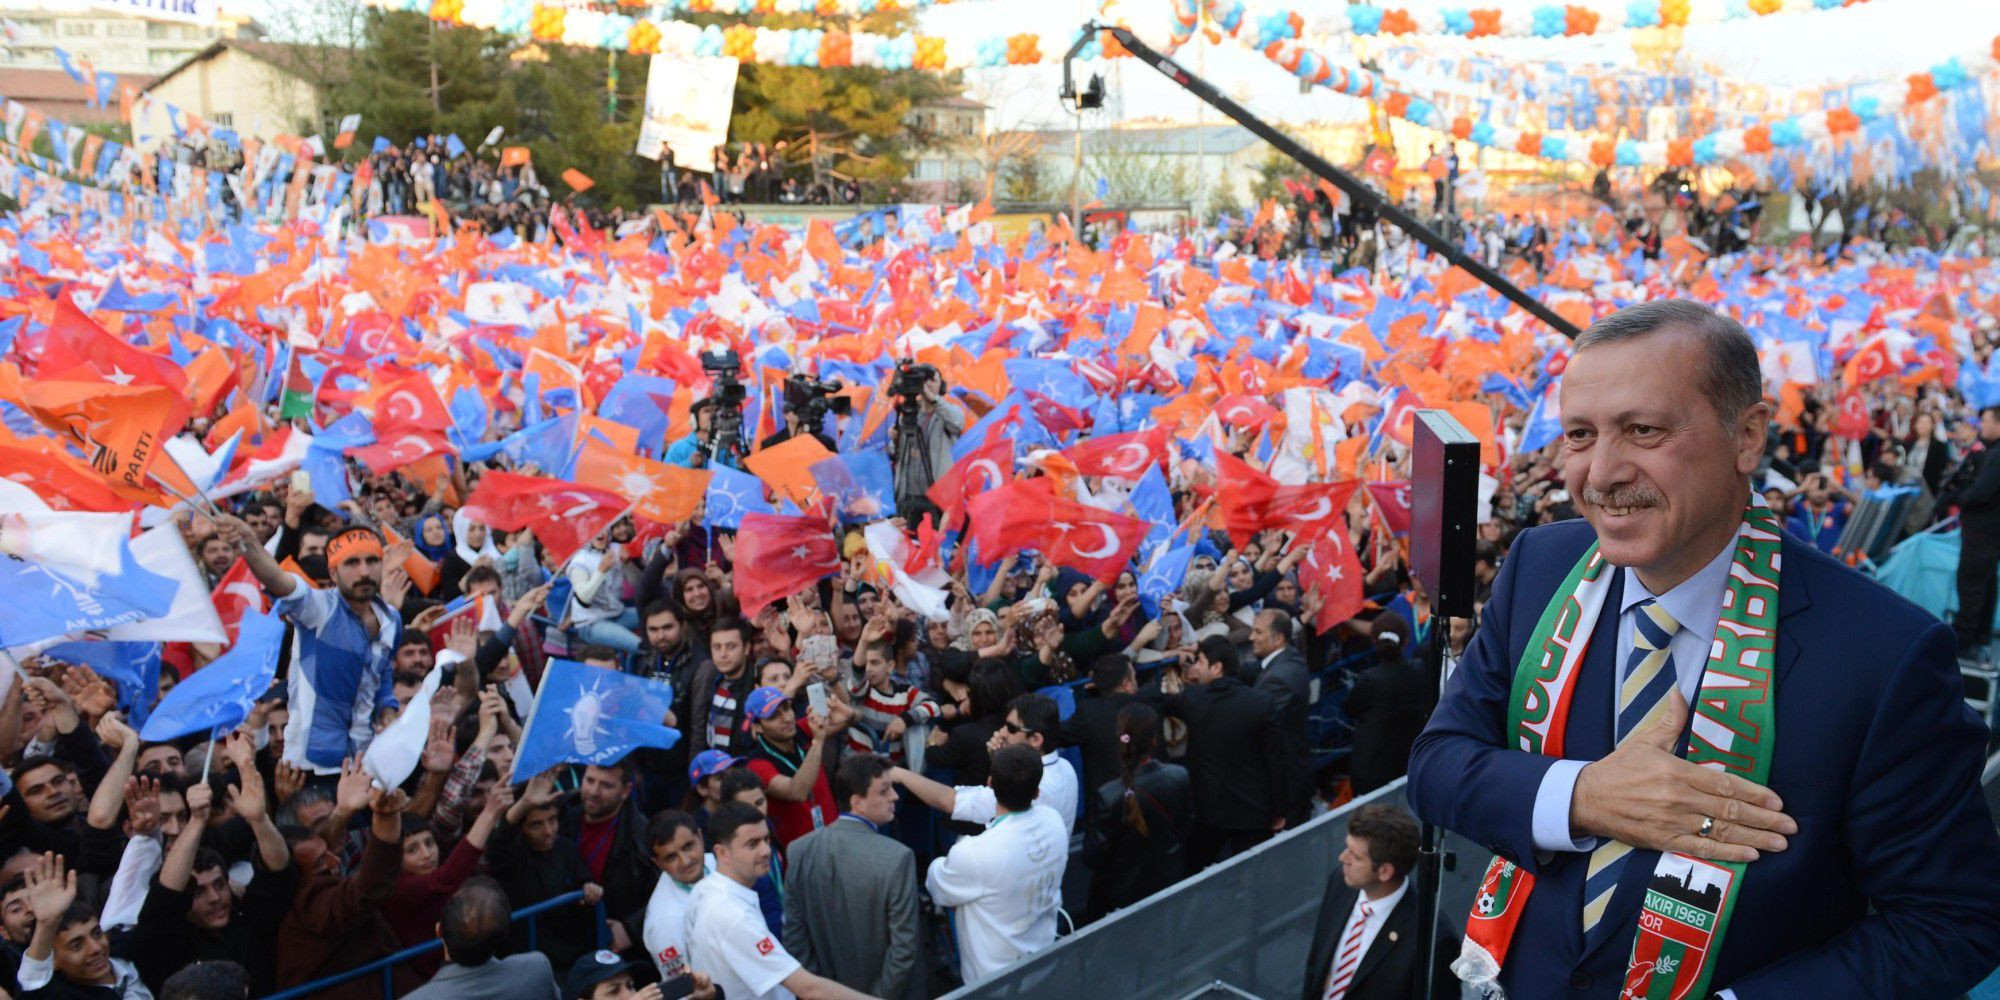 AKP của Tổng thống Recep Tayyip Erdogan giành thắng lợi với cam kết về an ninh  và chống khủng bố.